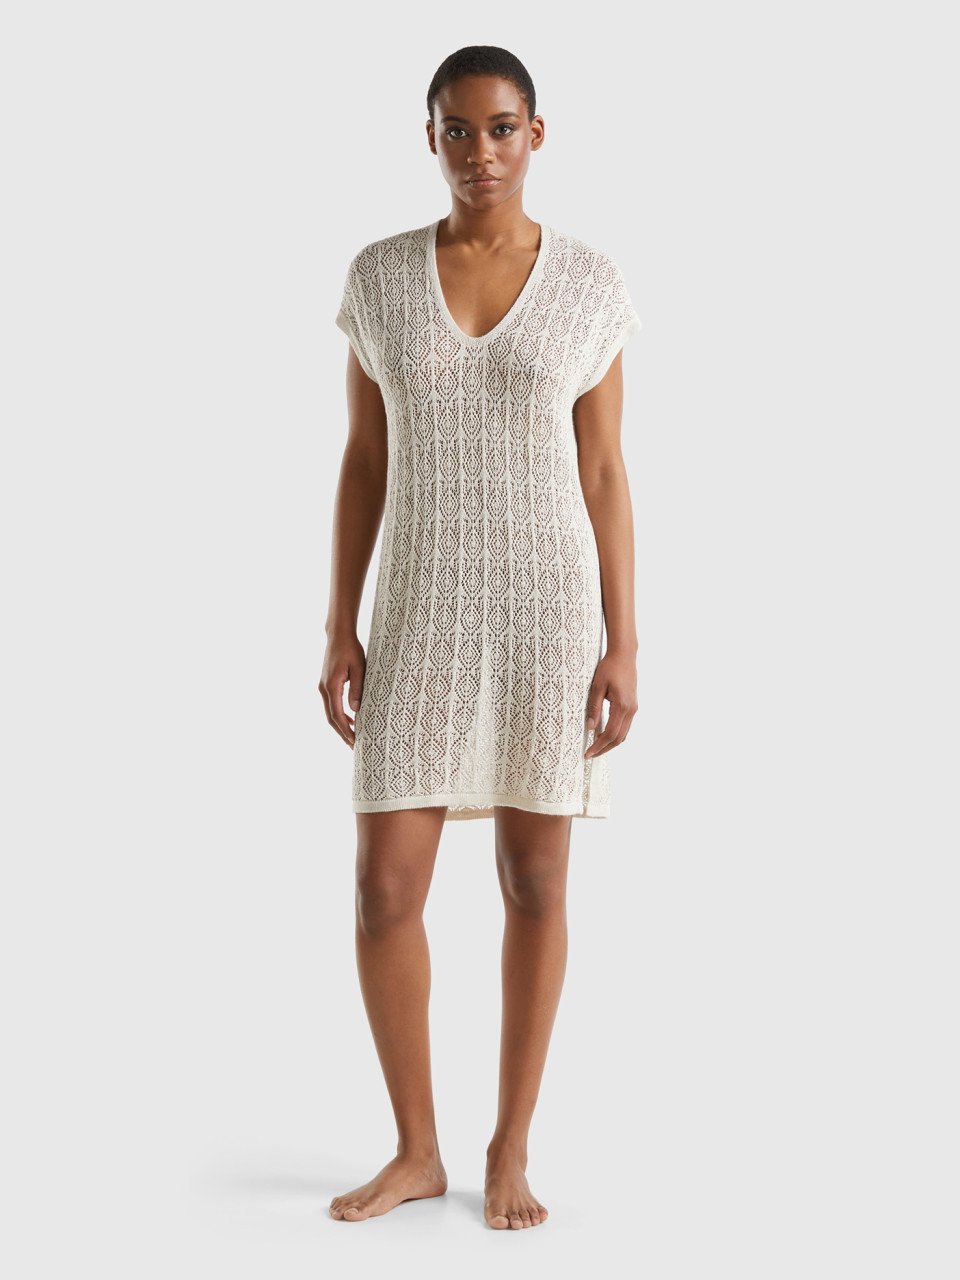 Benetton, Open-knit Dress In Linen Blend, Creamy White, Women